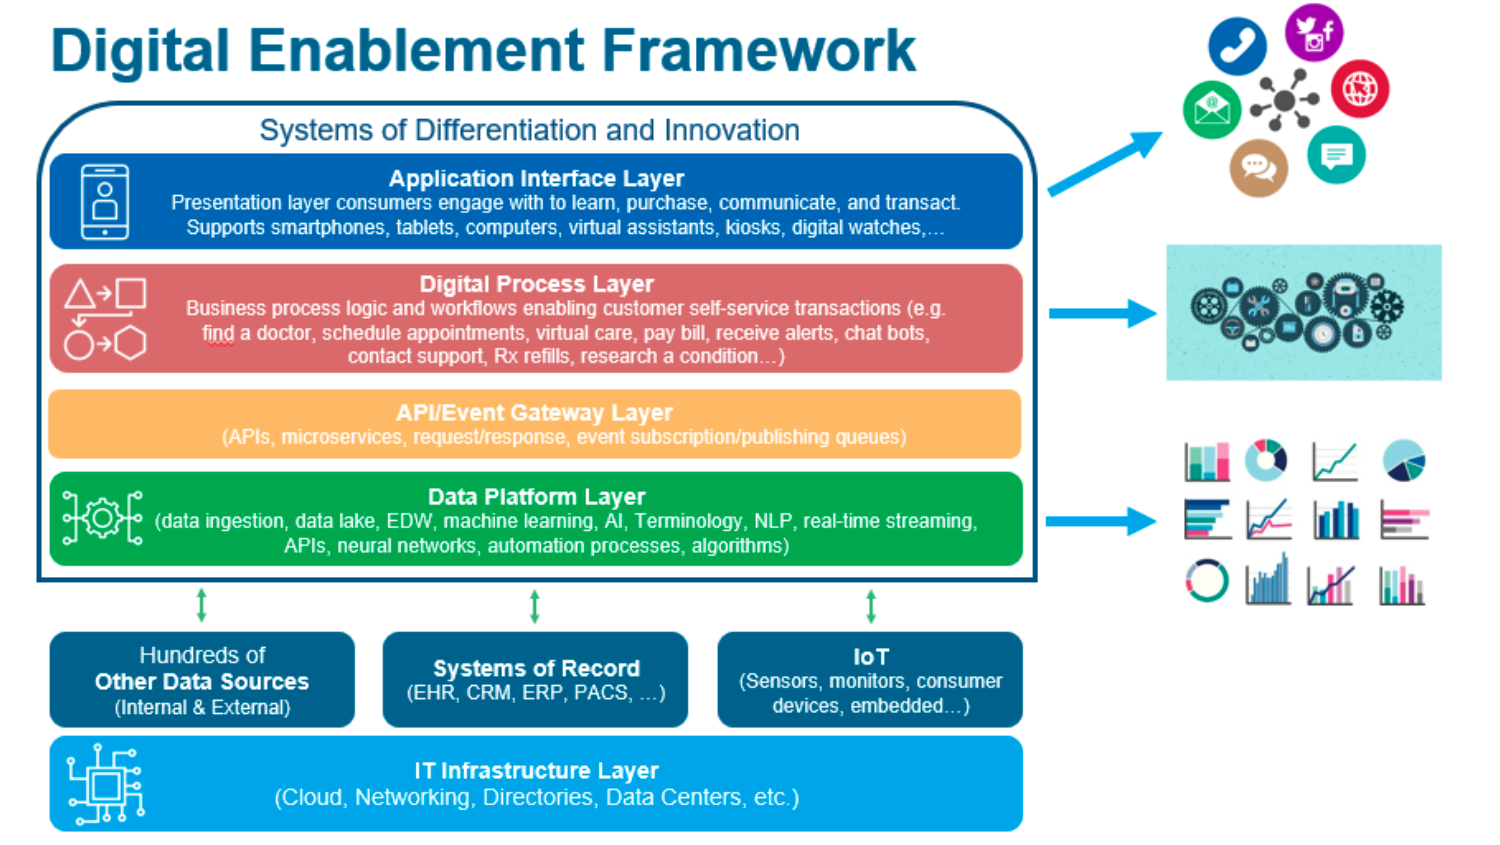 Digital enablement framework